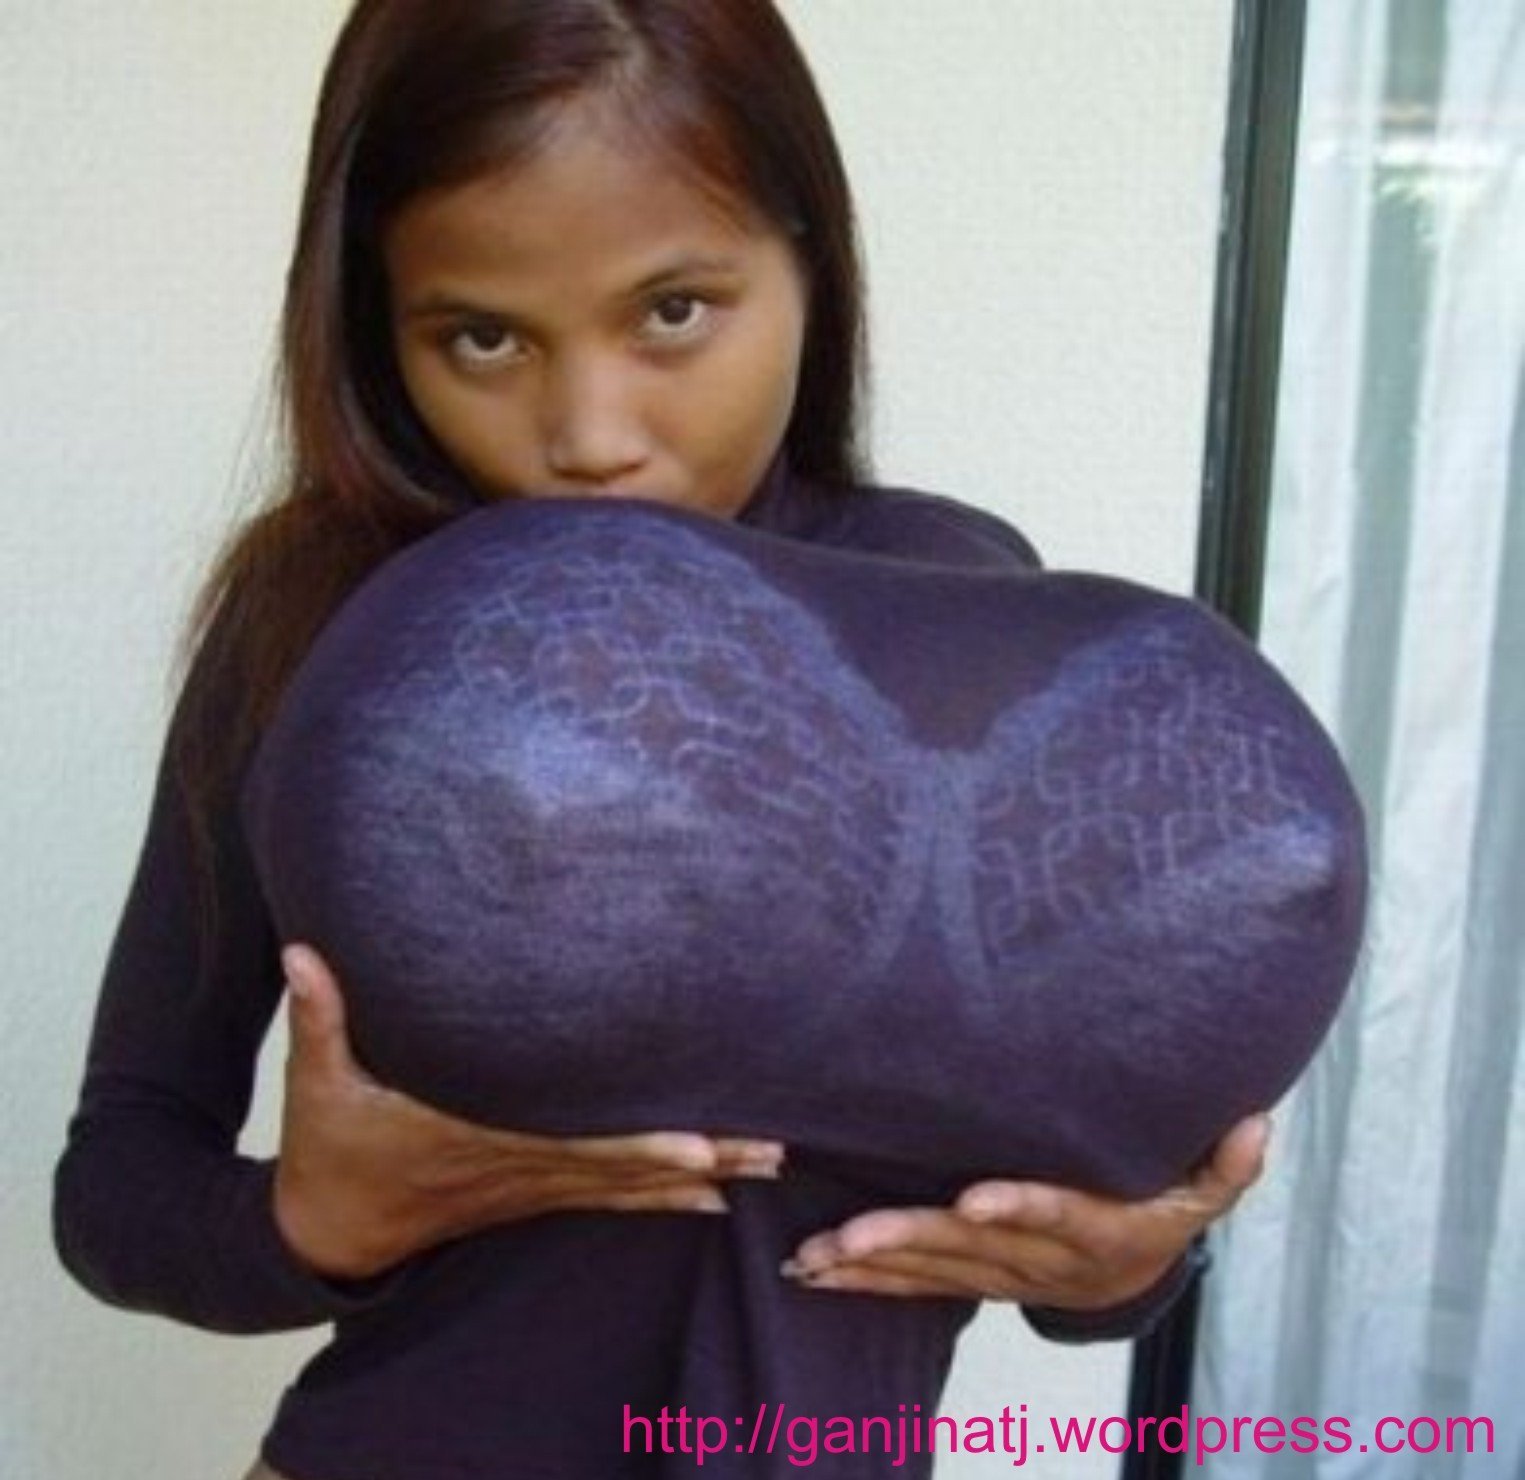 женщины с самыми огромными грудями фото 25